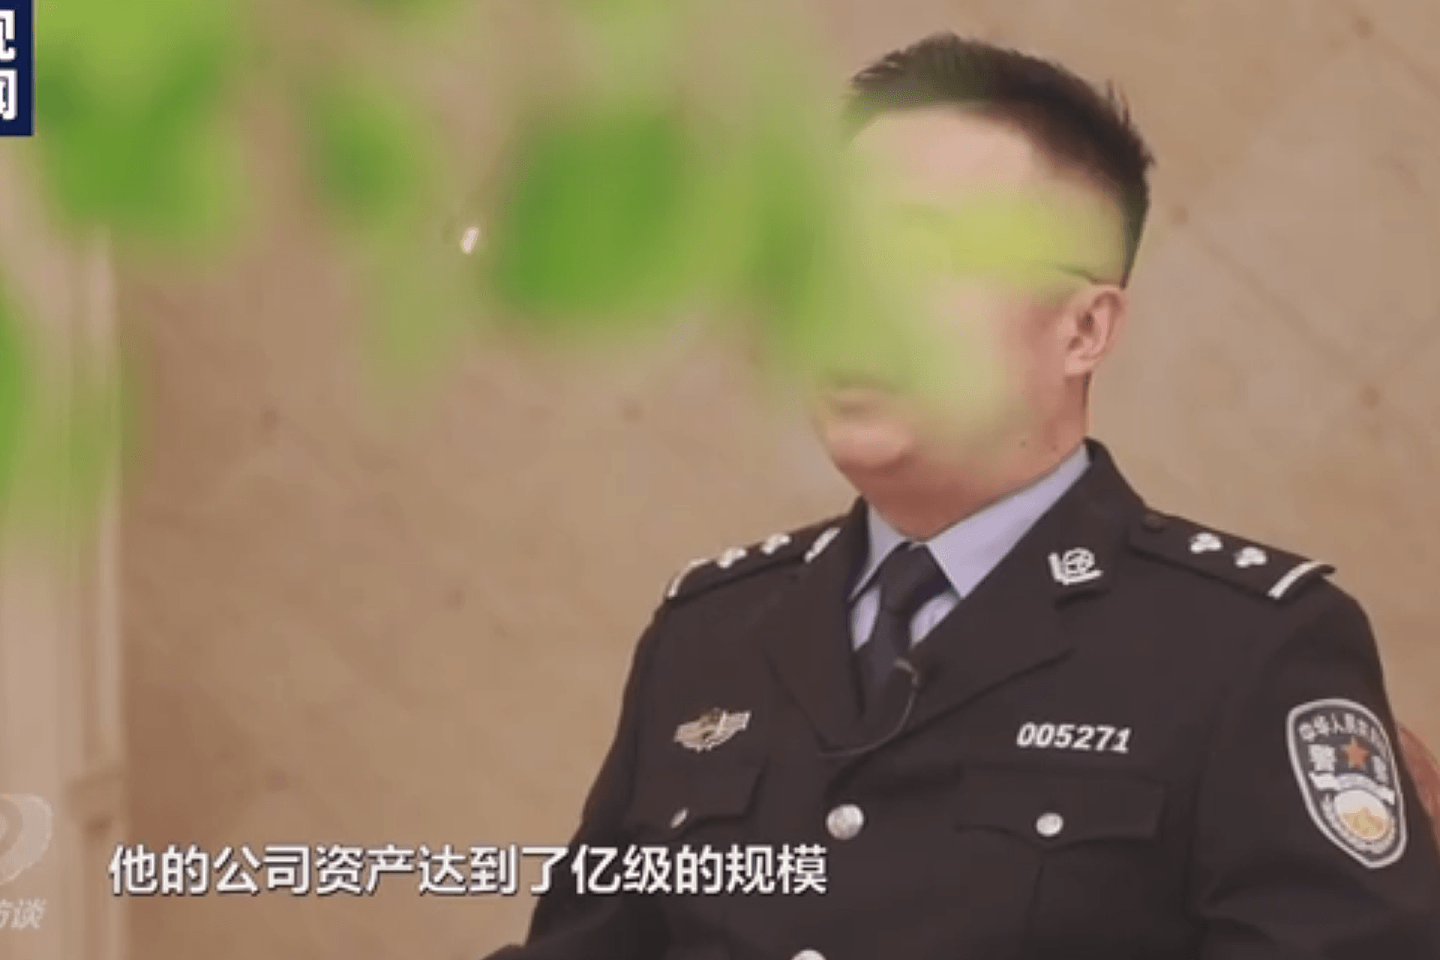 中国央视起底李亨利。图为广州国家安全局警员指其公司资产达上亿级规模。（中国央视视频截图）